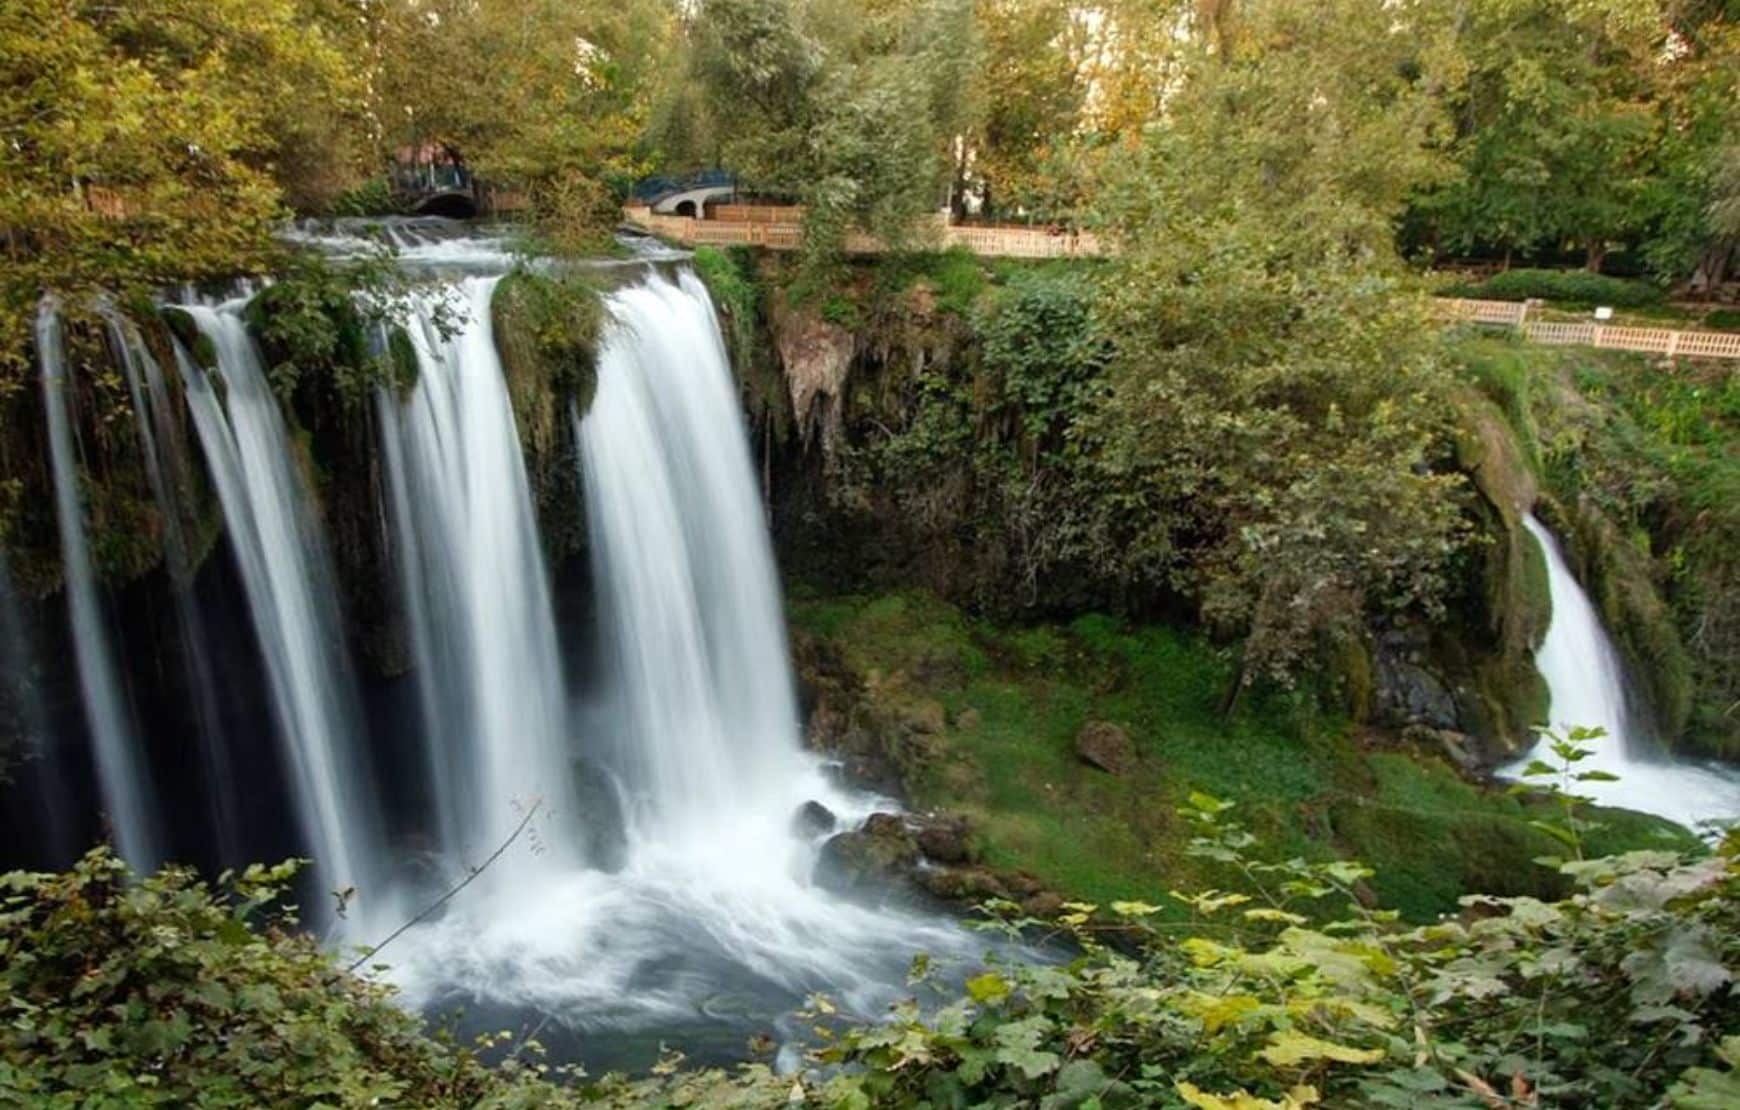 Visit Duden Waterfall at our Antalya Waterfalls Tour